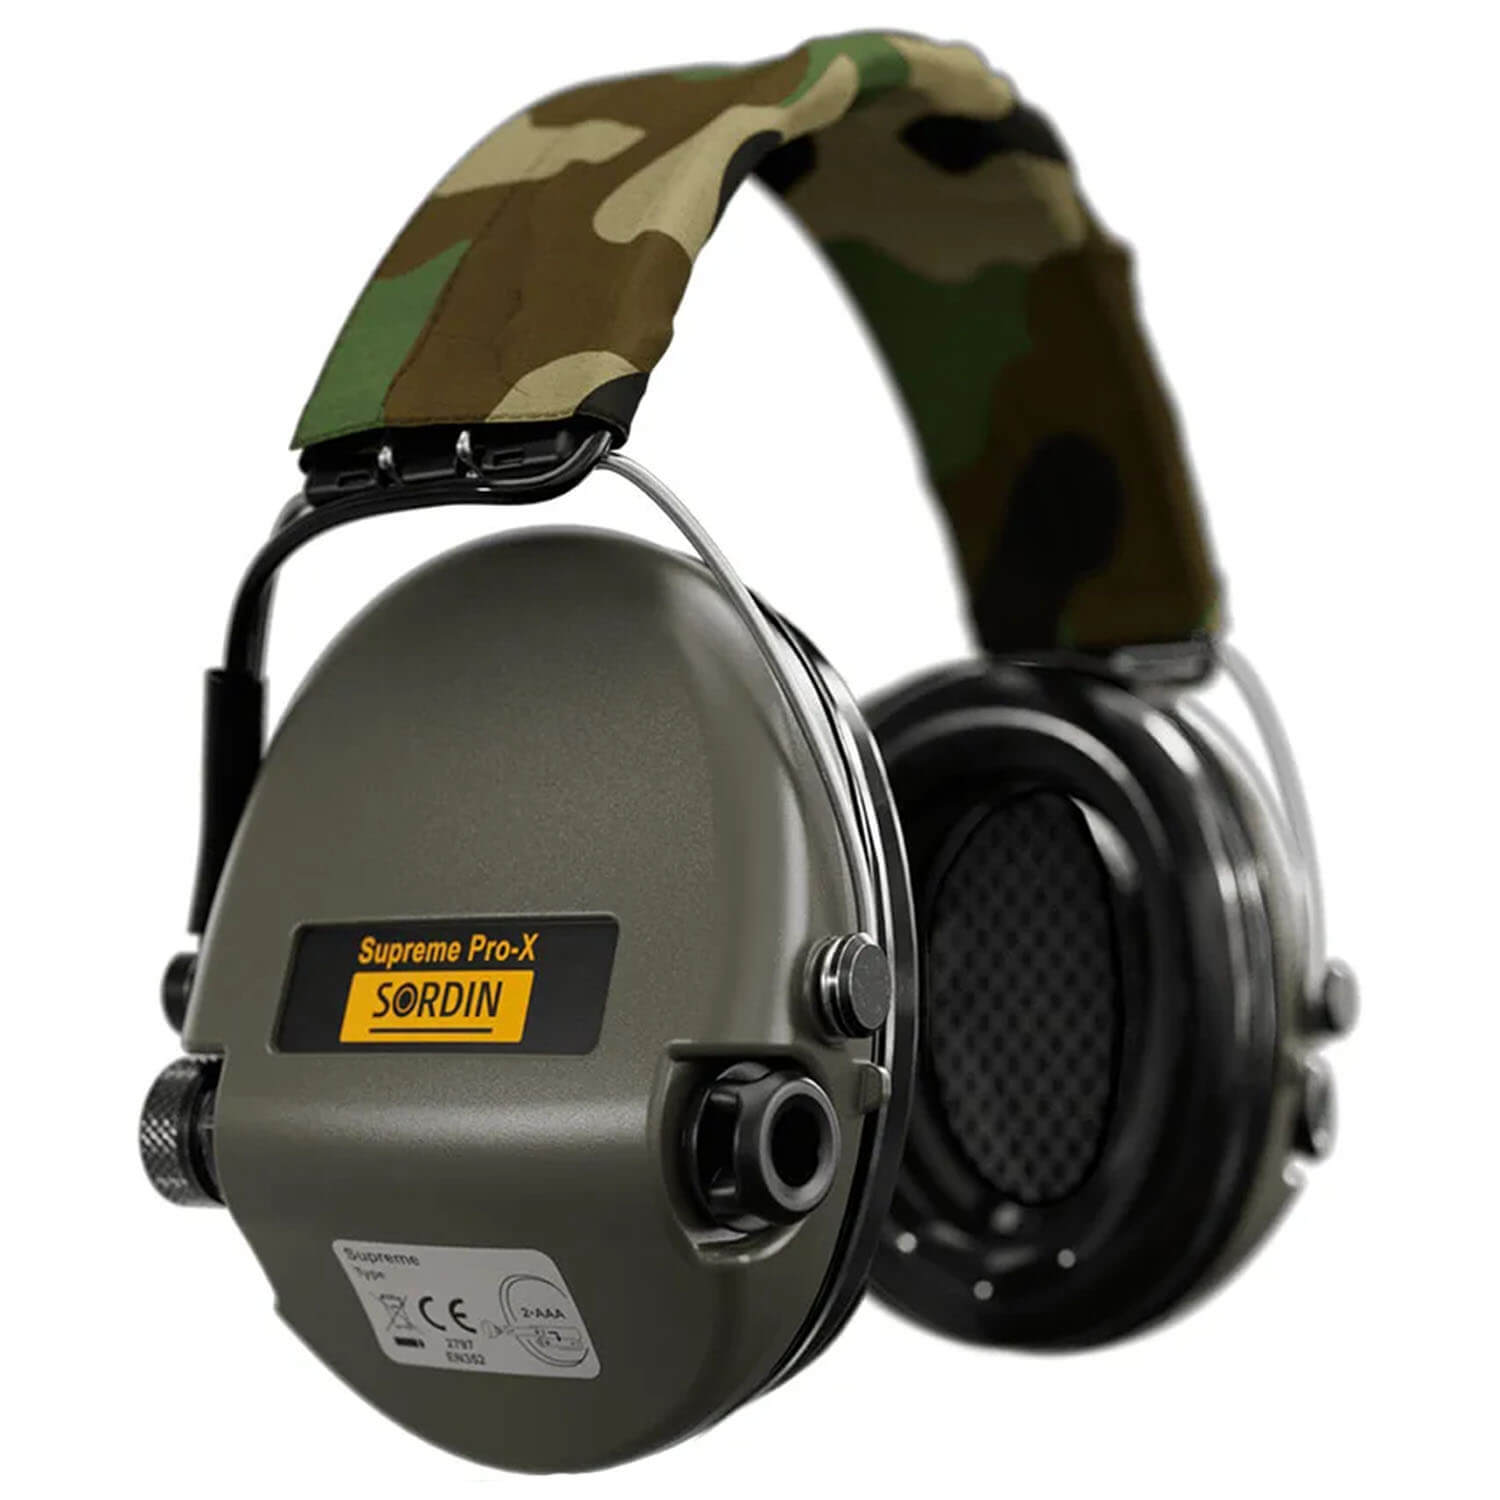 Sordin Ear Protector Supreme Pro X (camo)